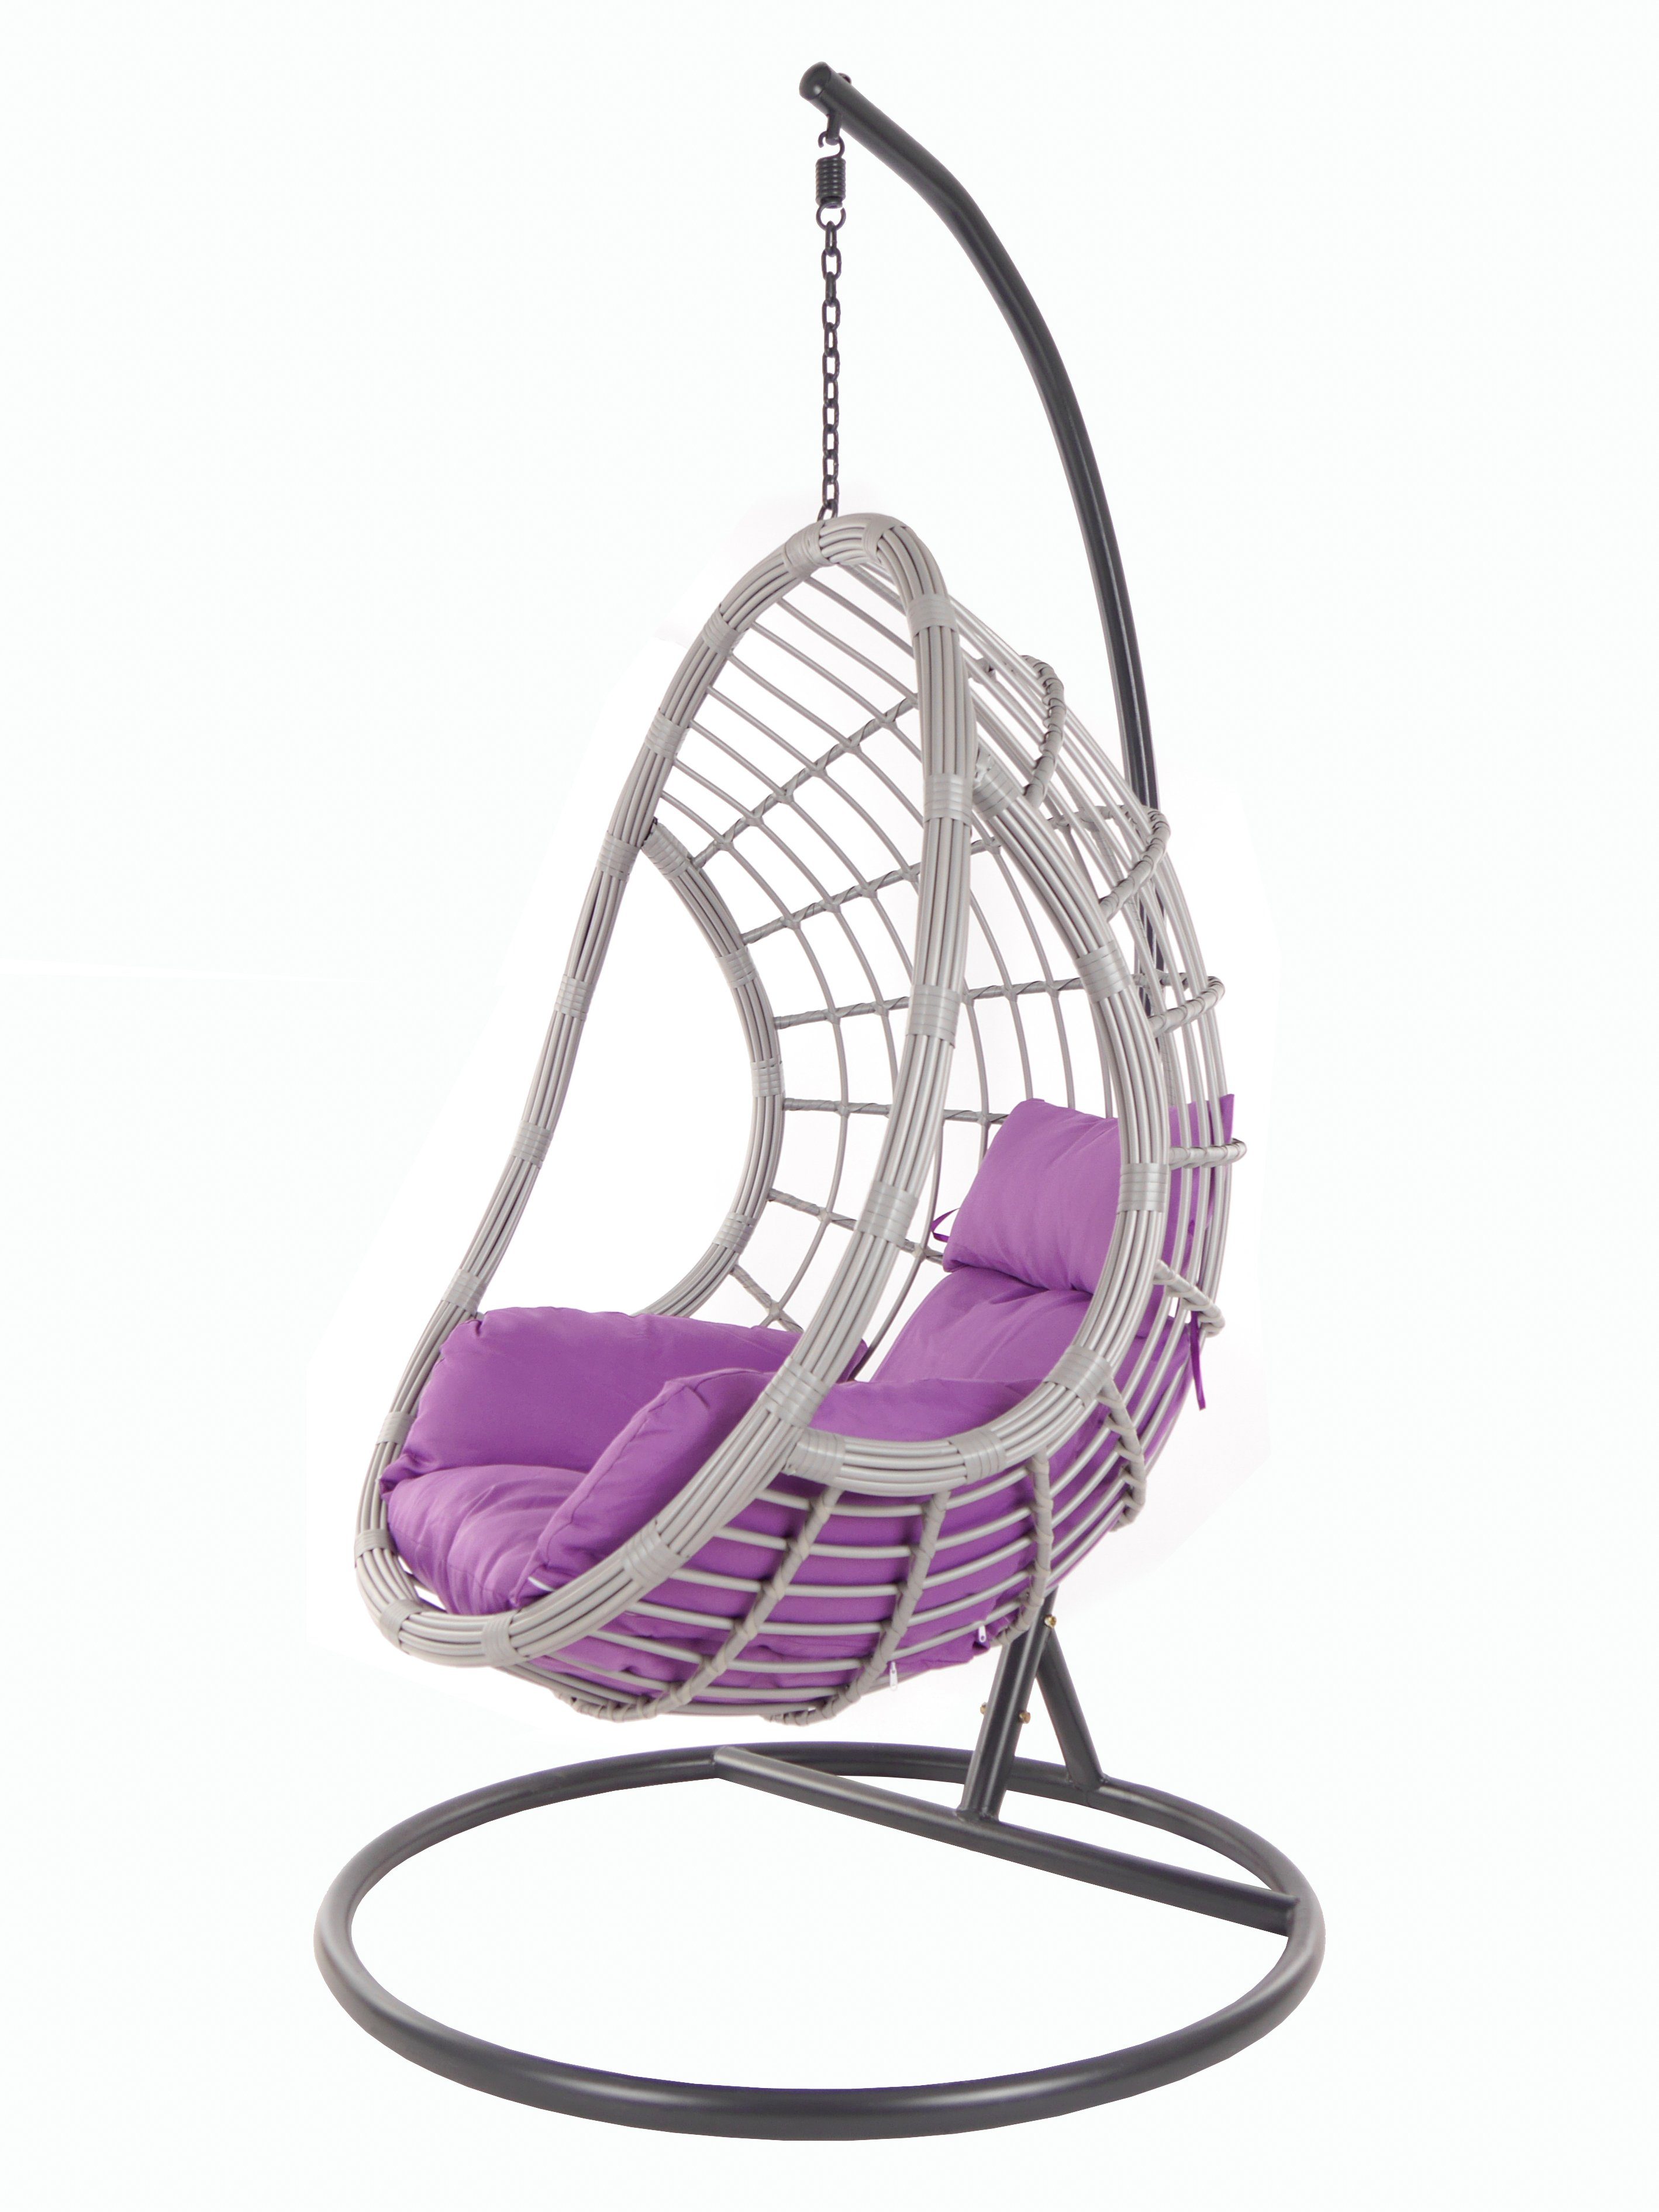 KIDEO Hängesessel PALMANOVA lightgrey, Schwebesessel mit Gestell und Kissen, Swing Chair, Loungemöbel lila (4050 violet)